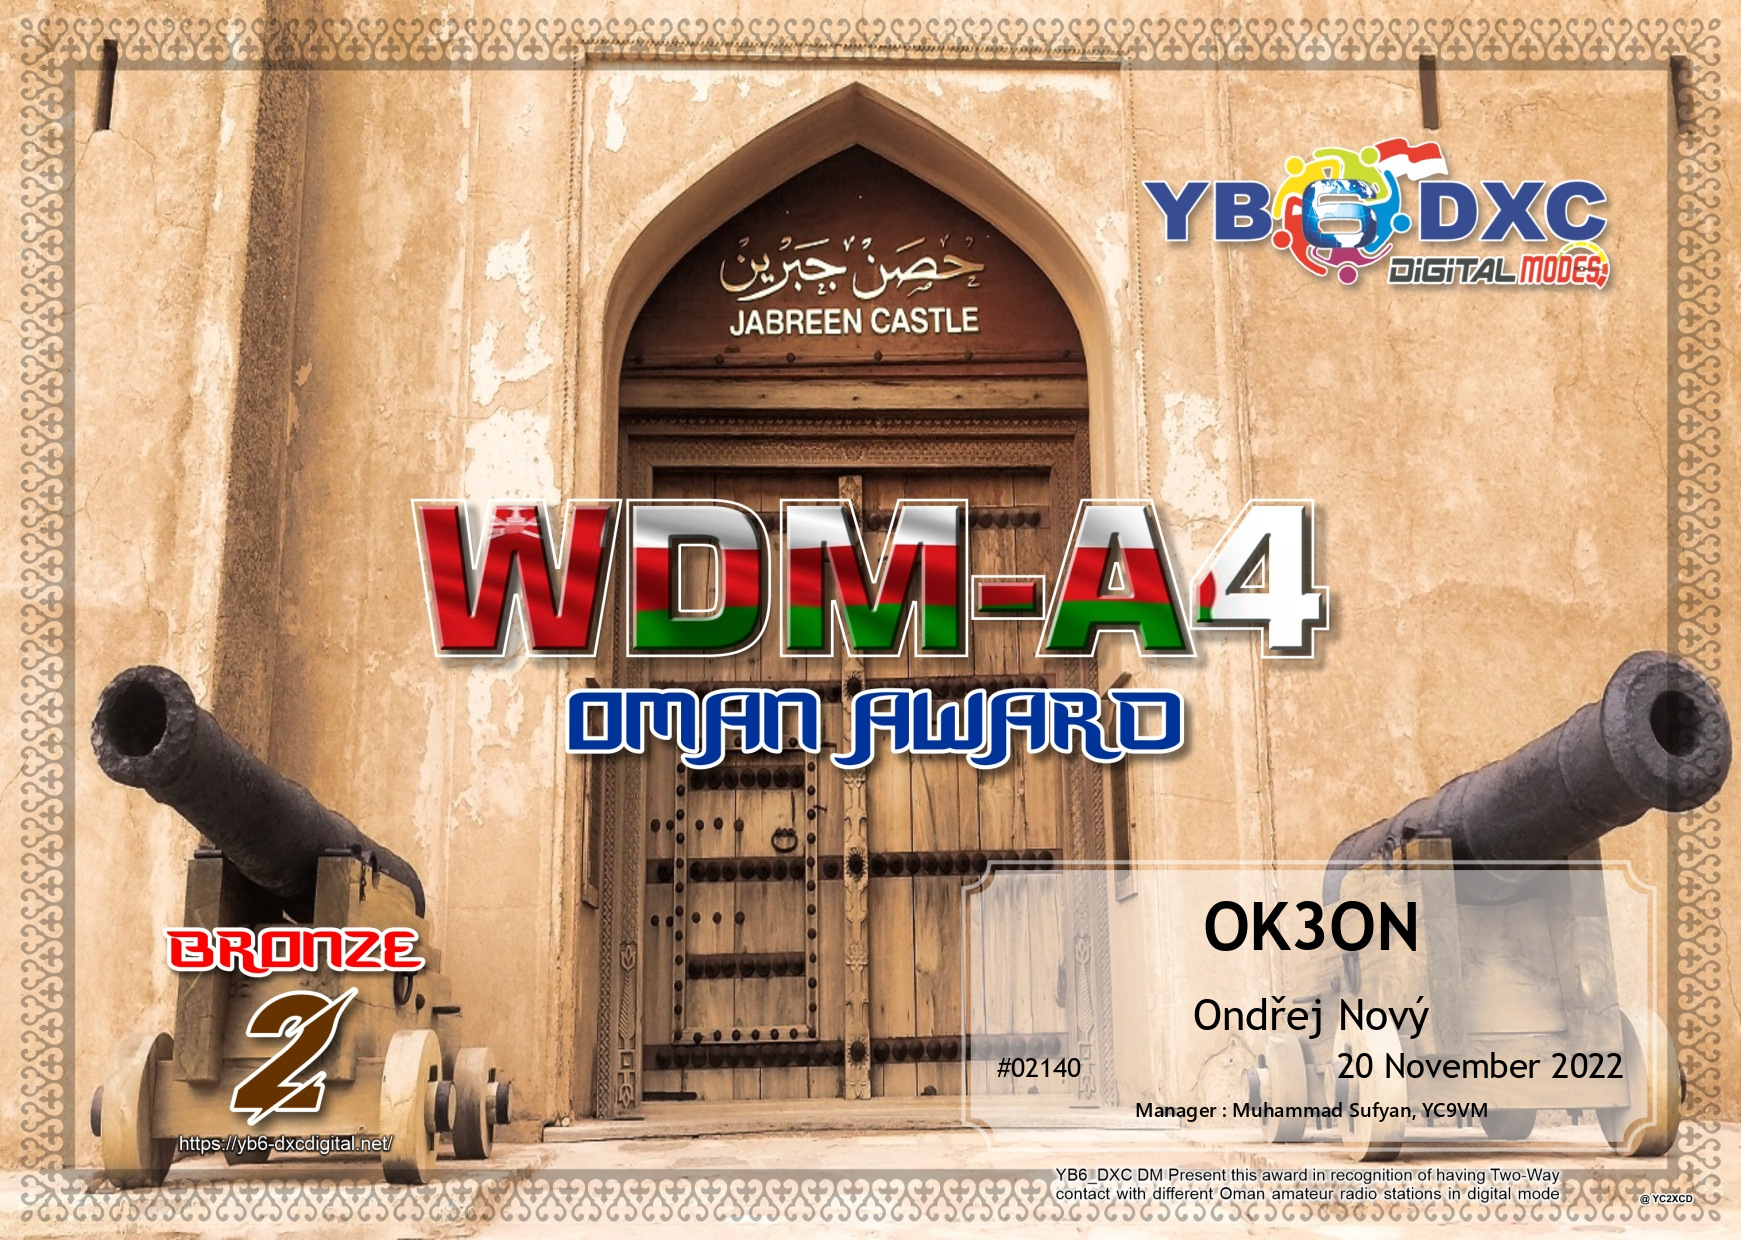 awards/OK3ON-WDMA4-BRONZE_YB6DXC.jpg